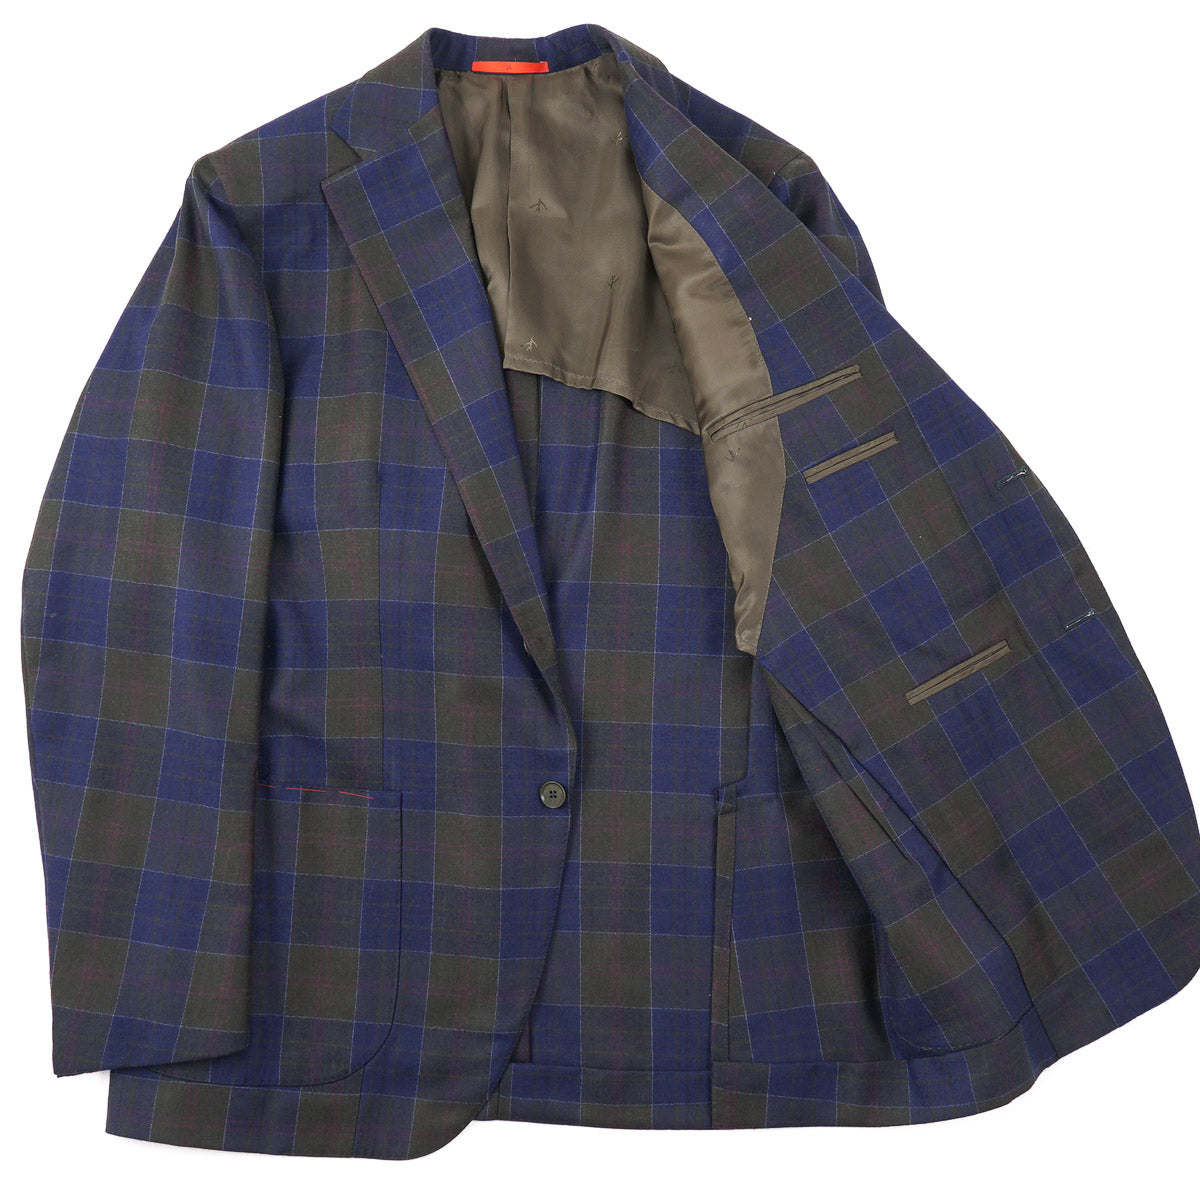 Isaia 'Marechiaro' Wool Sport Coat - Top Shelf Apparel